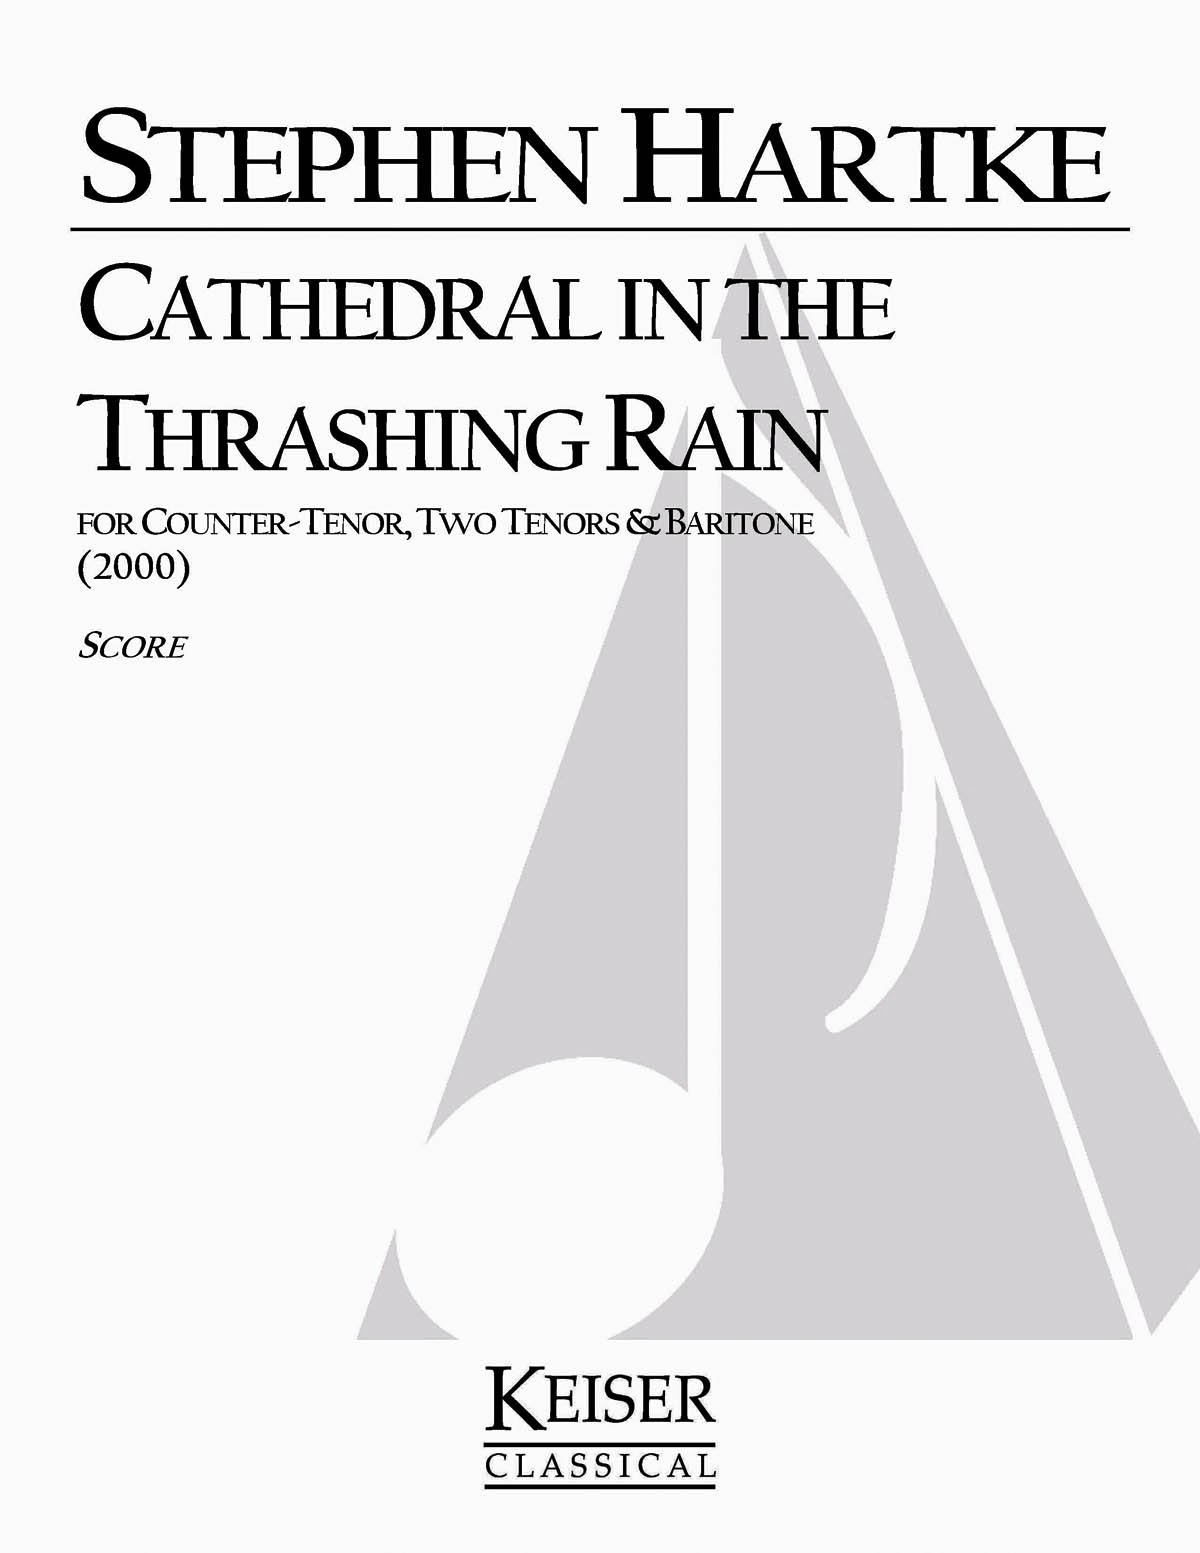 Kathedrale im Thrashing Rain